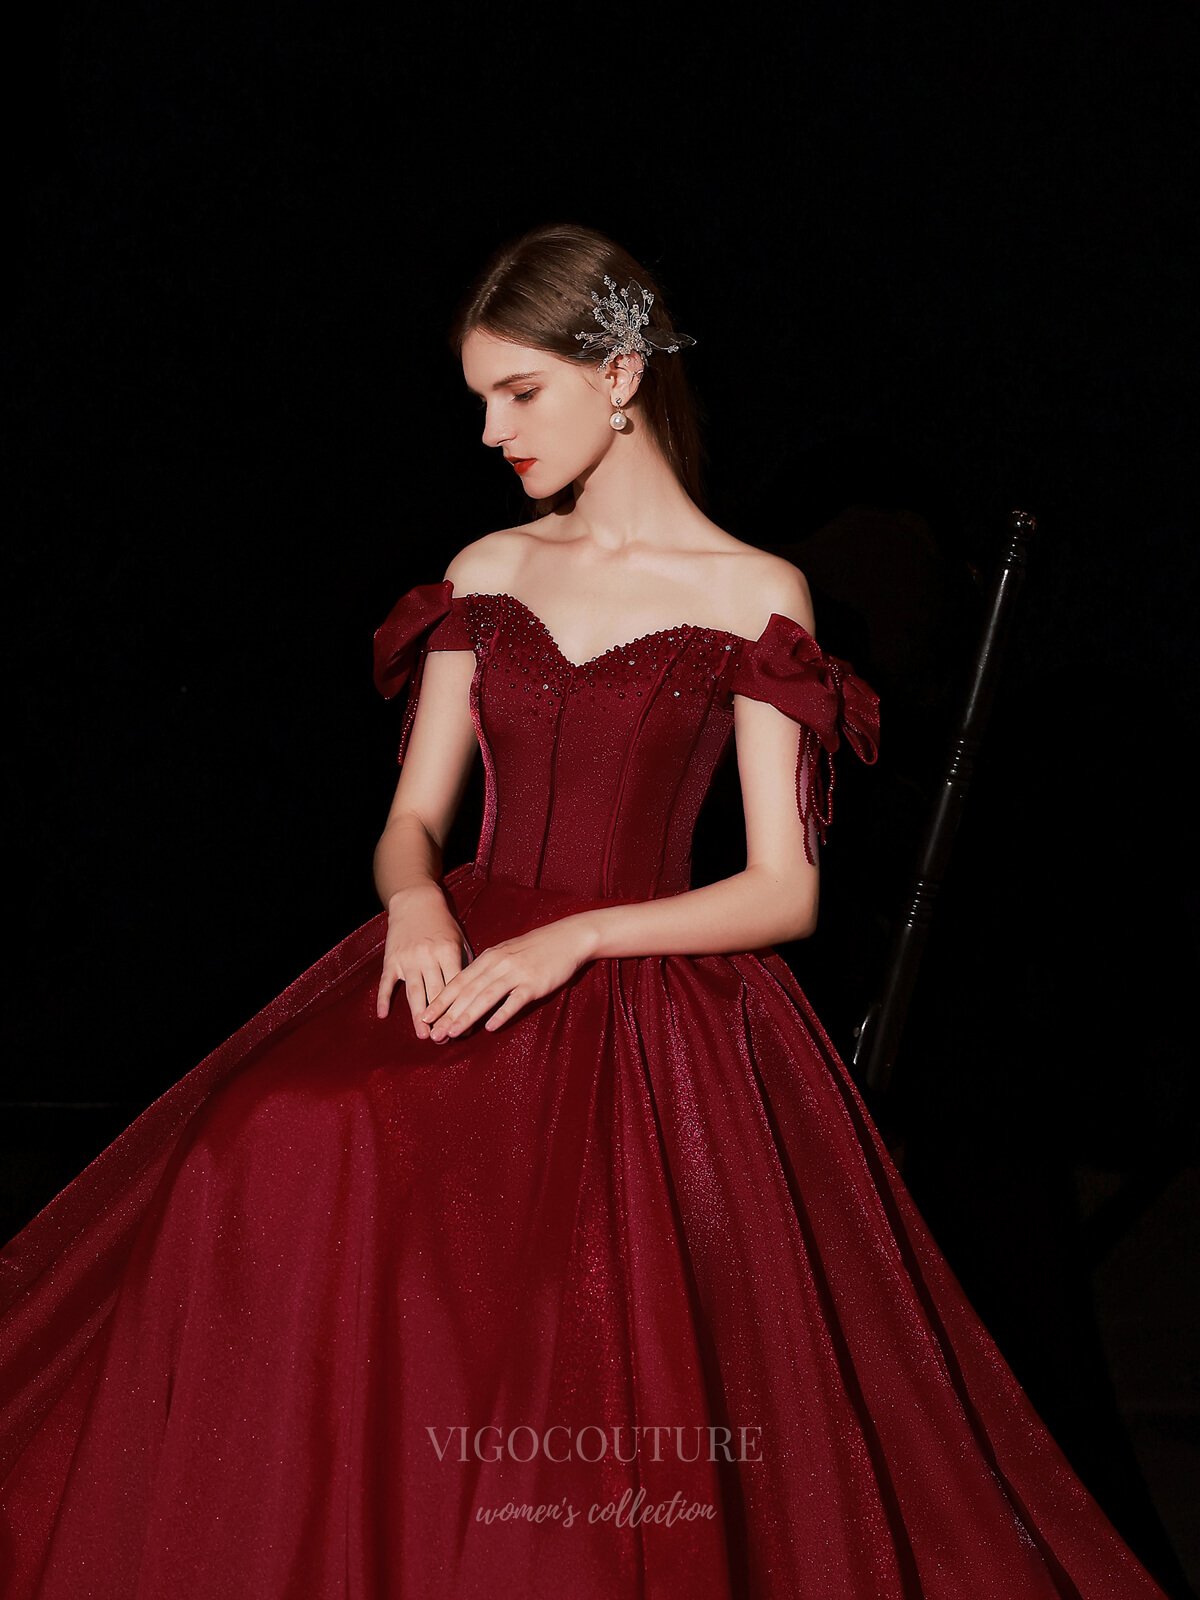 vigocouture-Burgundy Off the Shoulder Prom Dress 20736-Prom Dresses-vigocouture-